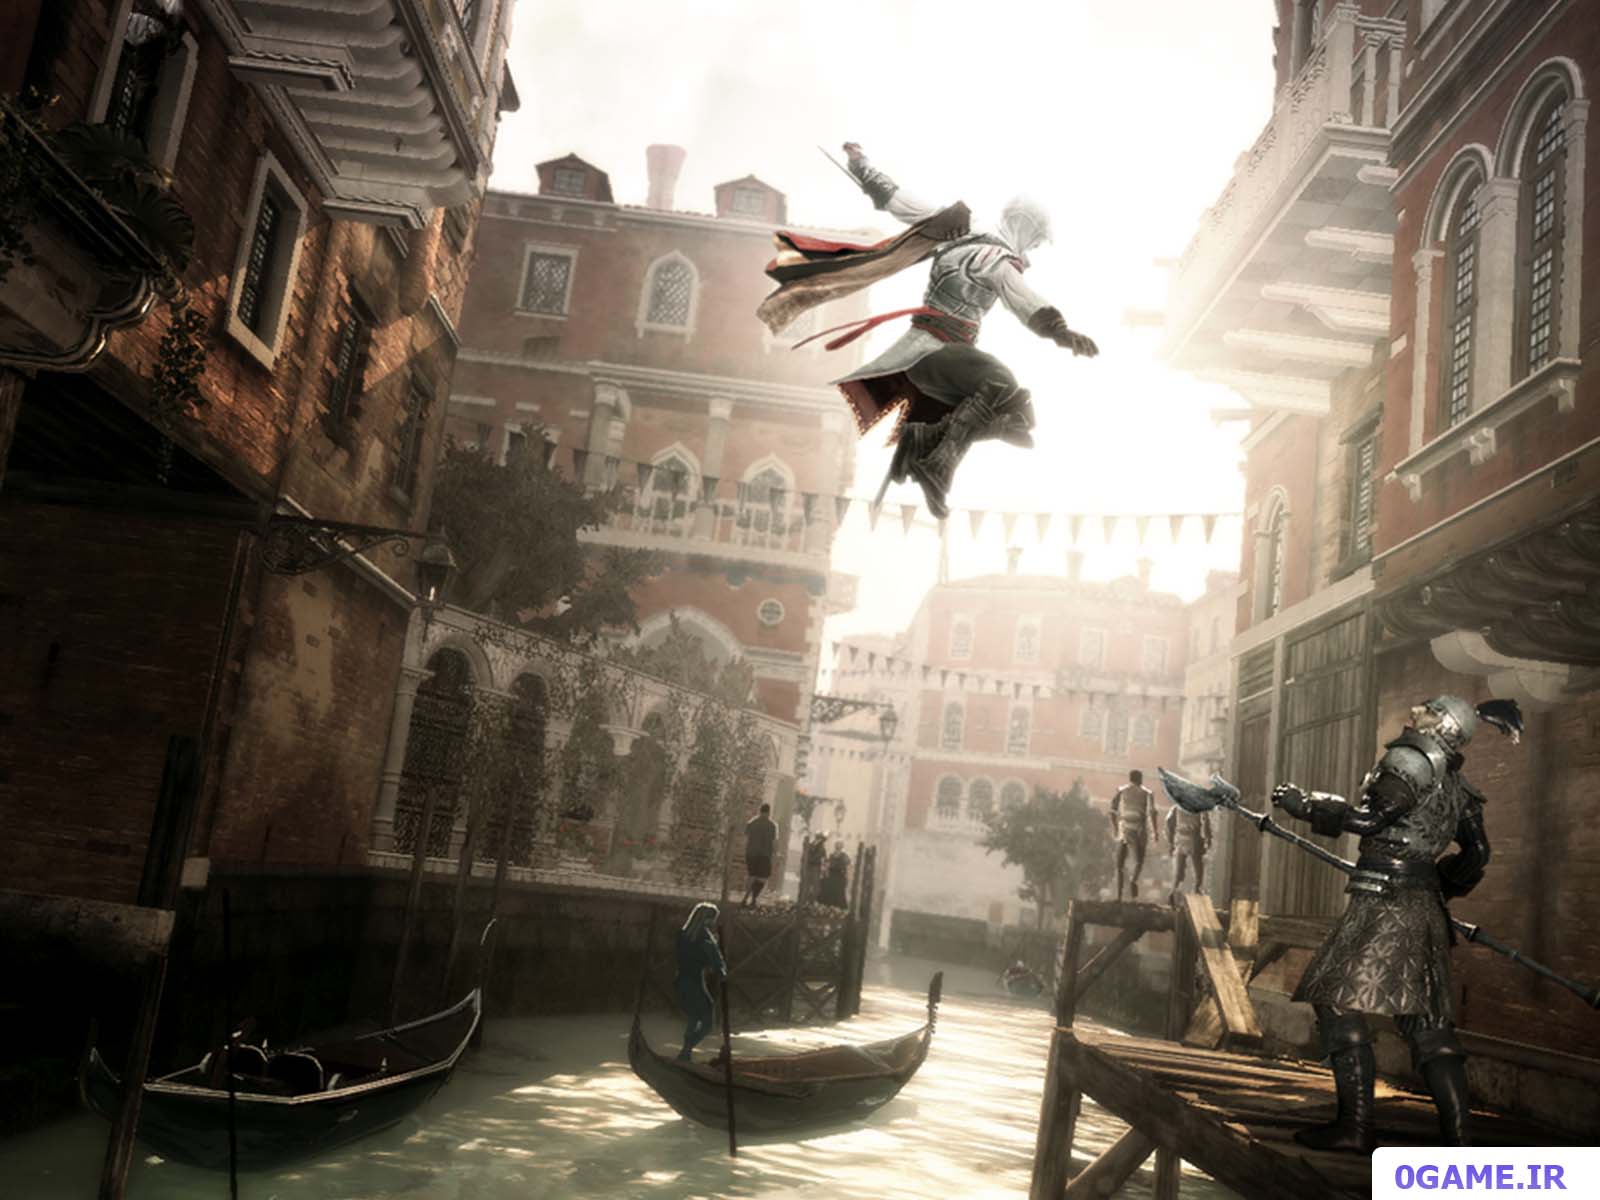 دانلود بازی اساسینز کرید 2 (Assassin's Creed II) نسخه کامل برای کامپیوتر